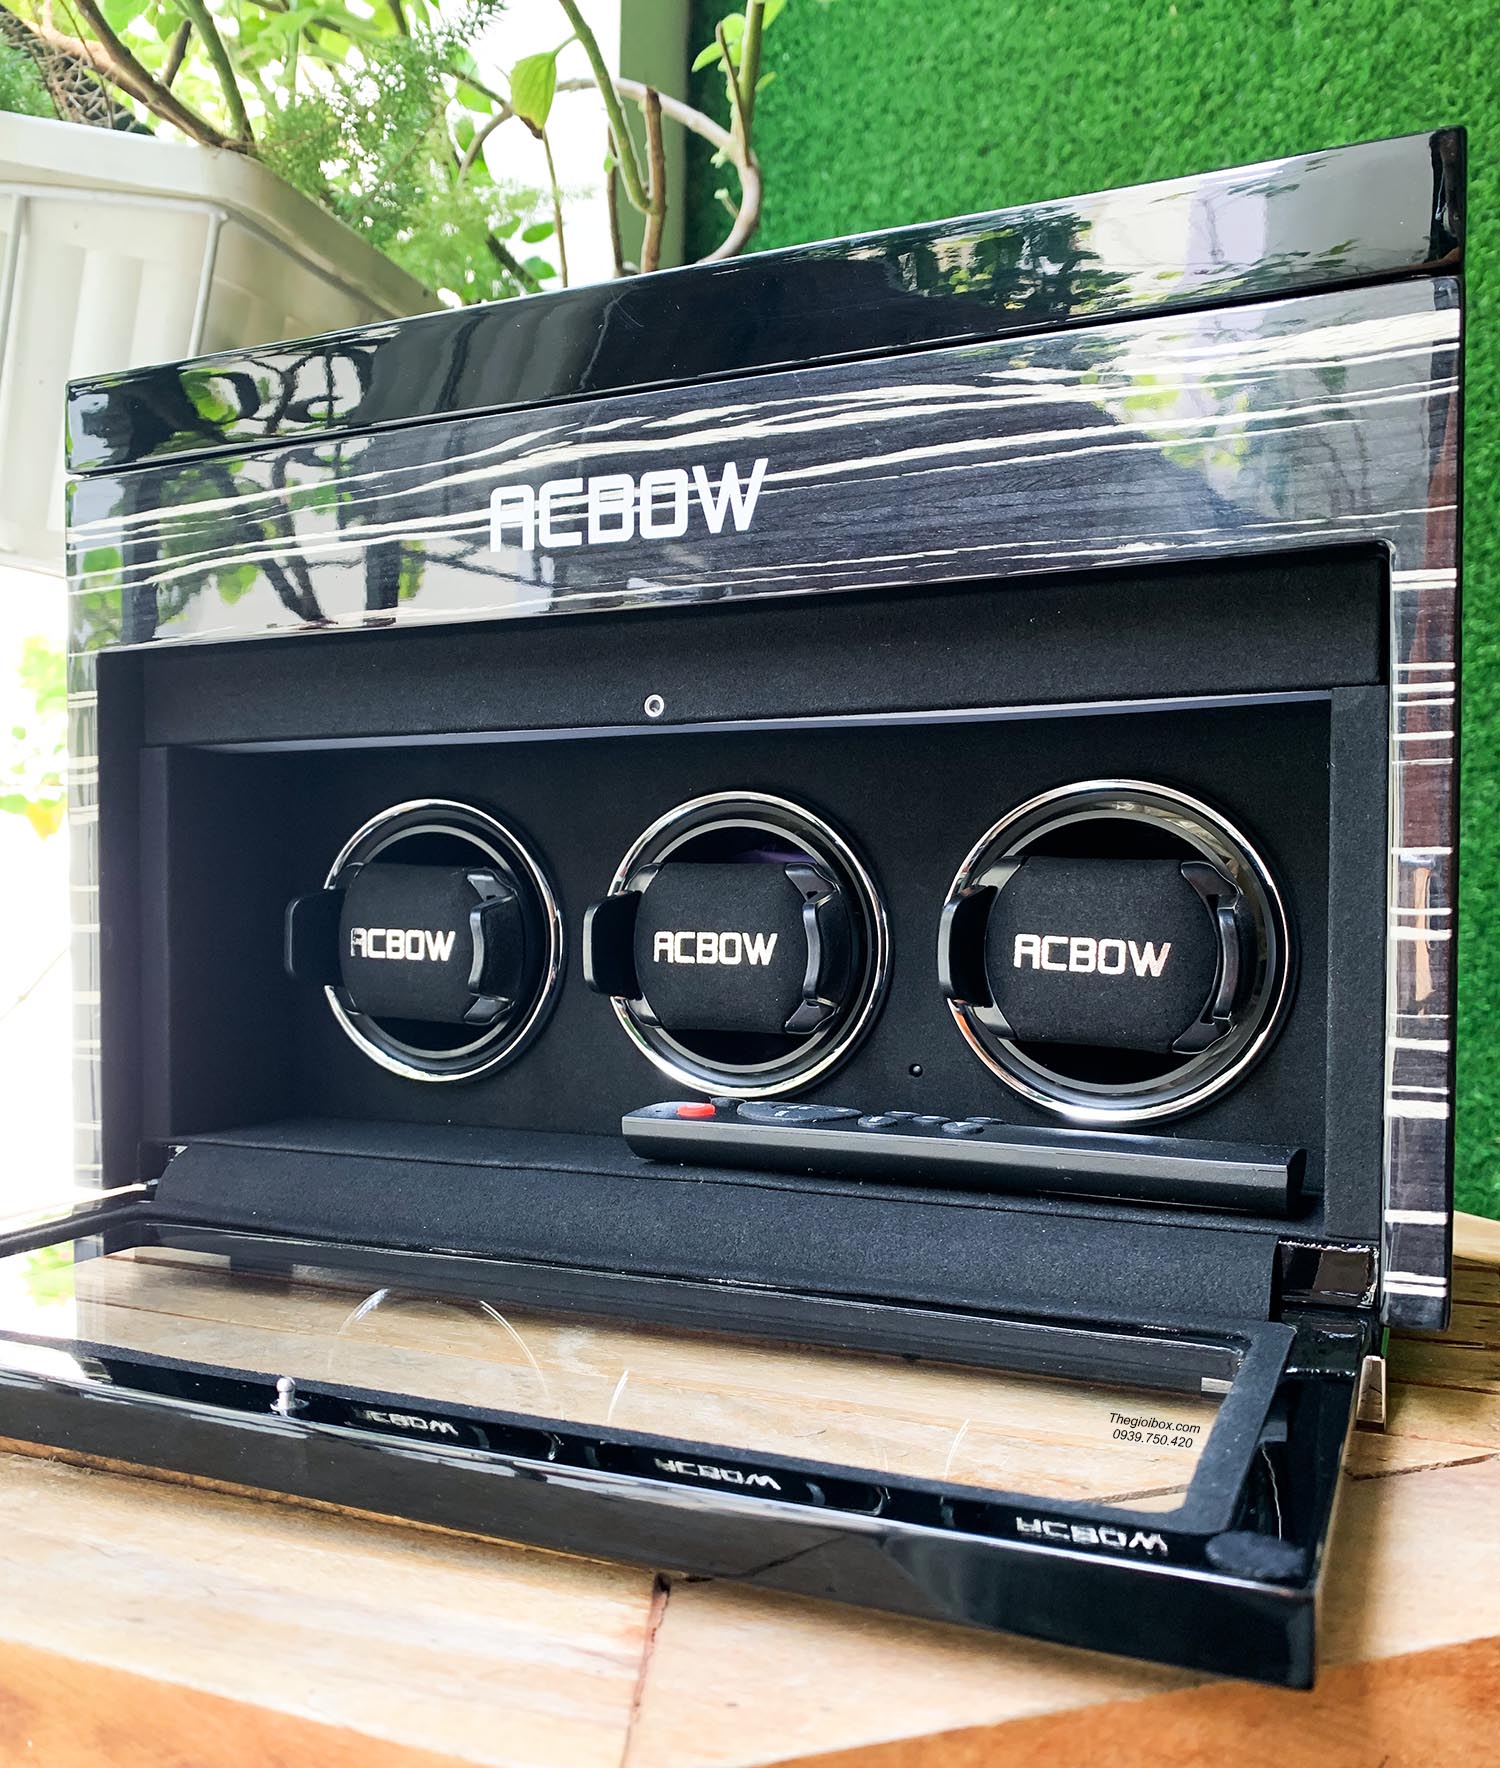 Tủ Hộp đựng đồng hồ cơ ACBOW dòng IW 3 xoay 6 tĩnh kèm remote - màn hình cảm ứng - đèn LED cao cấp